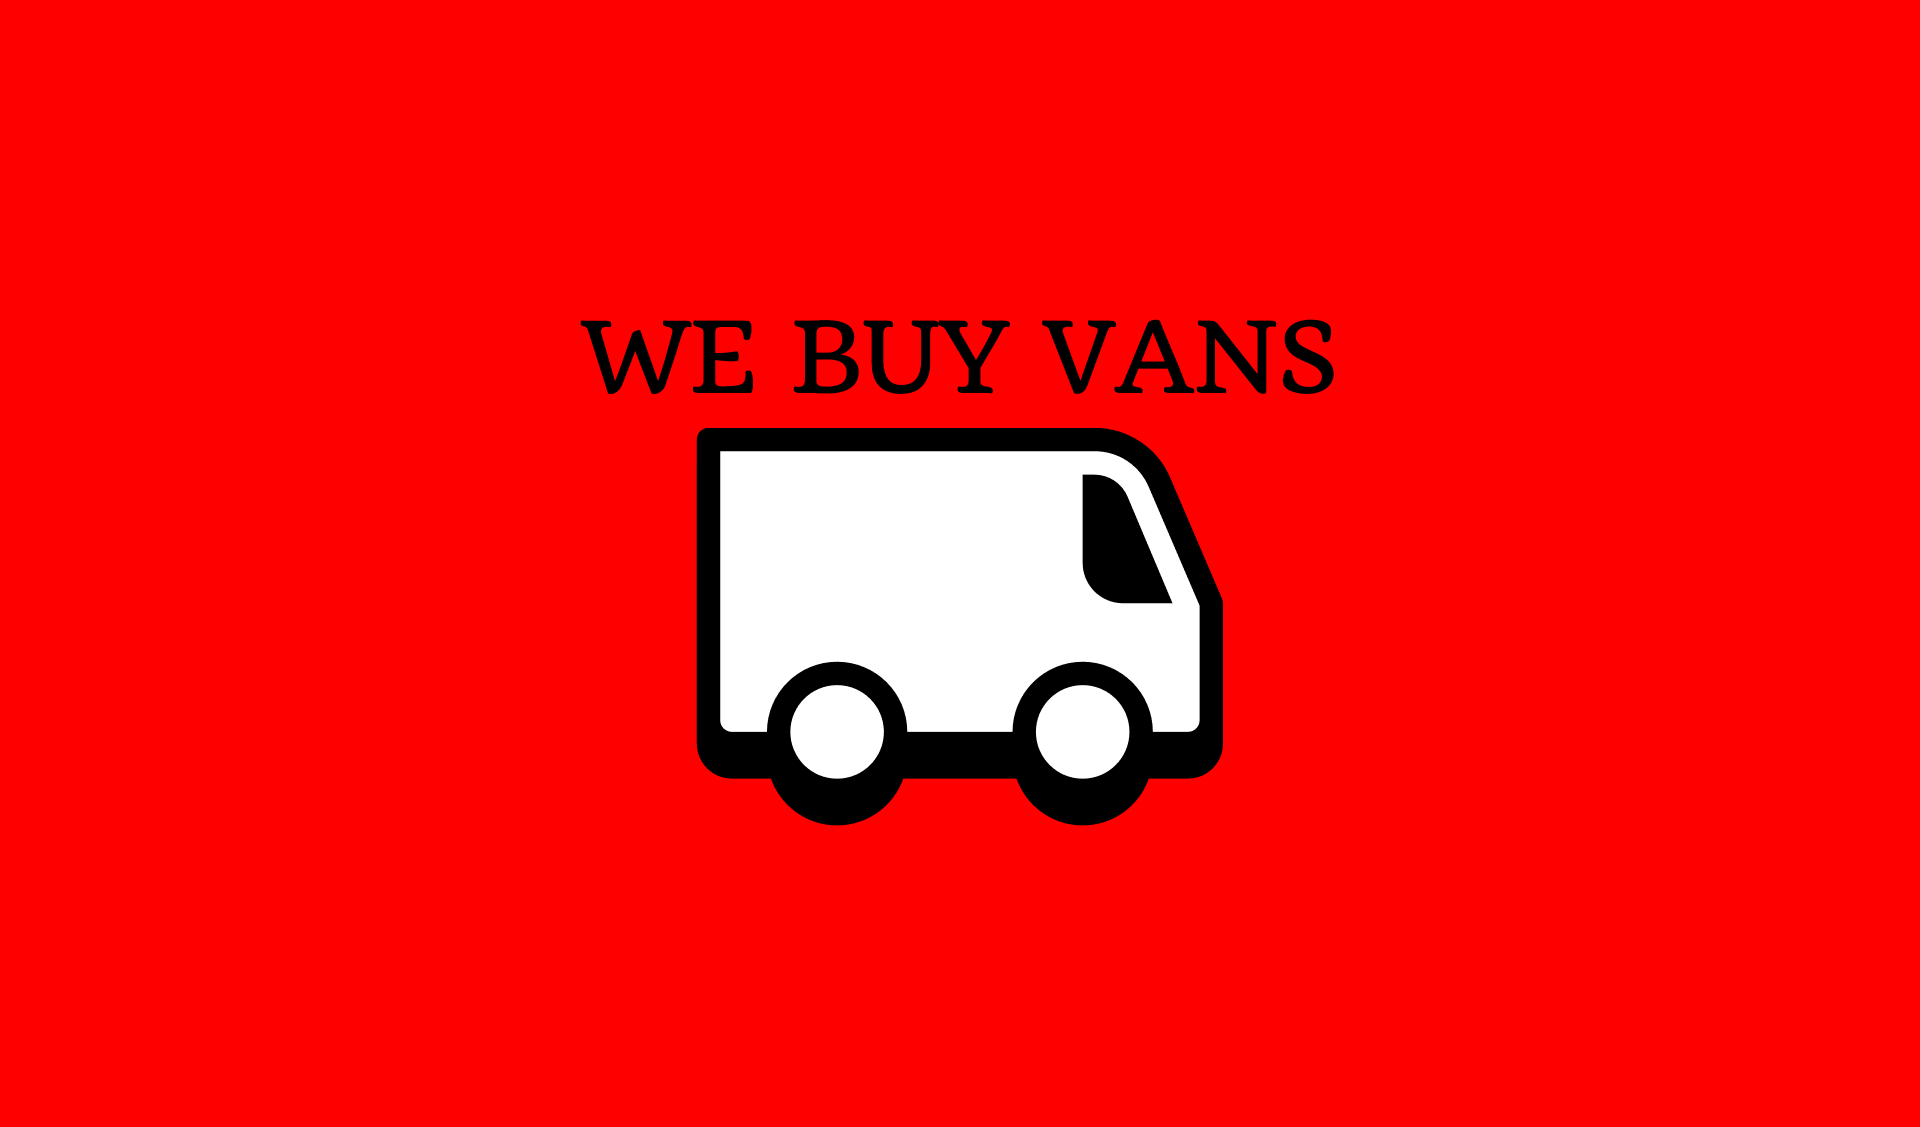 We Buy Broken Vans